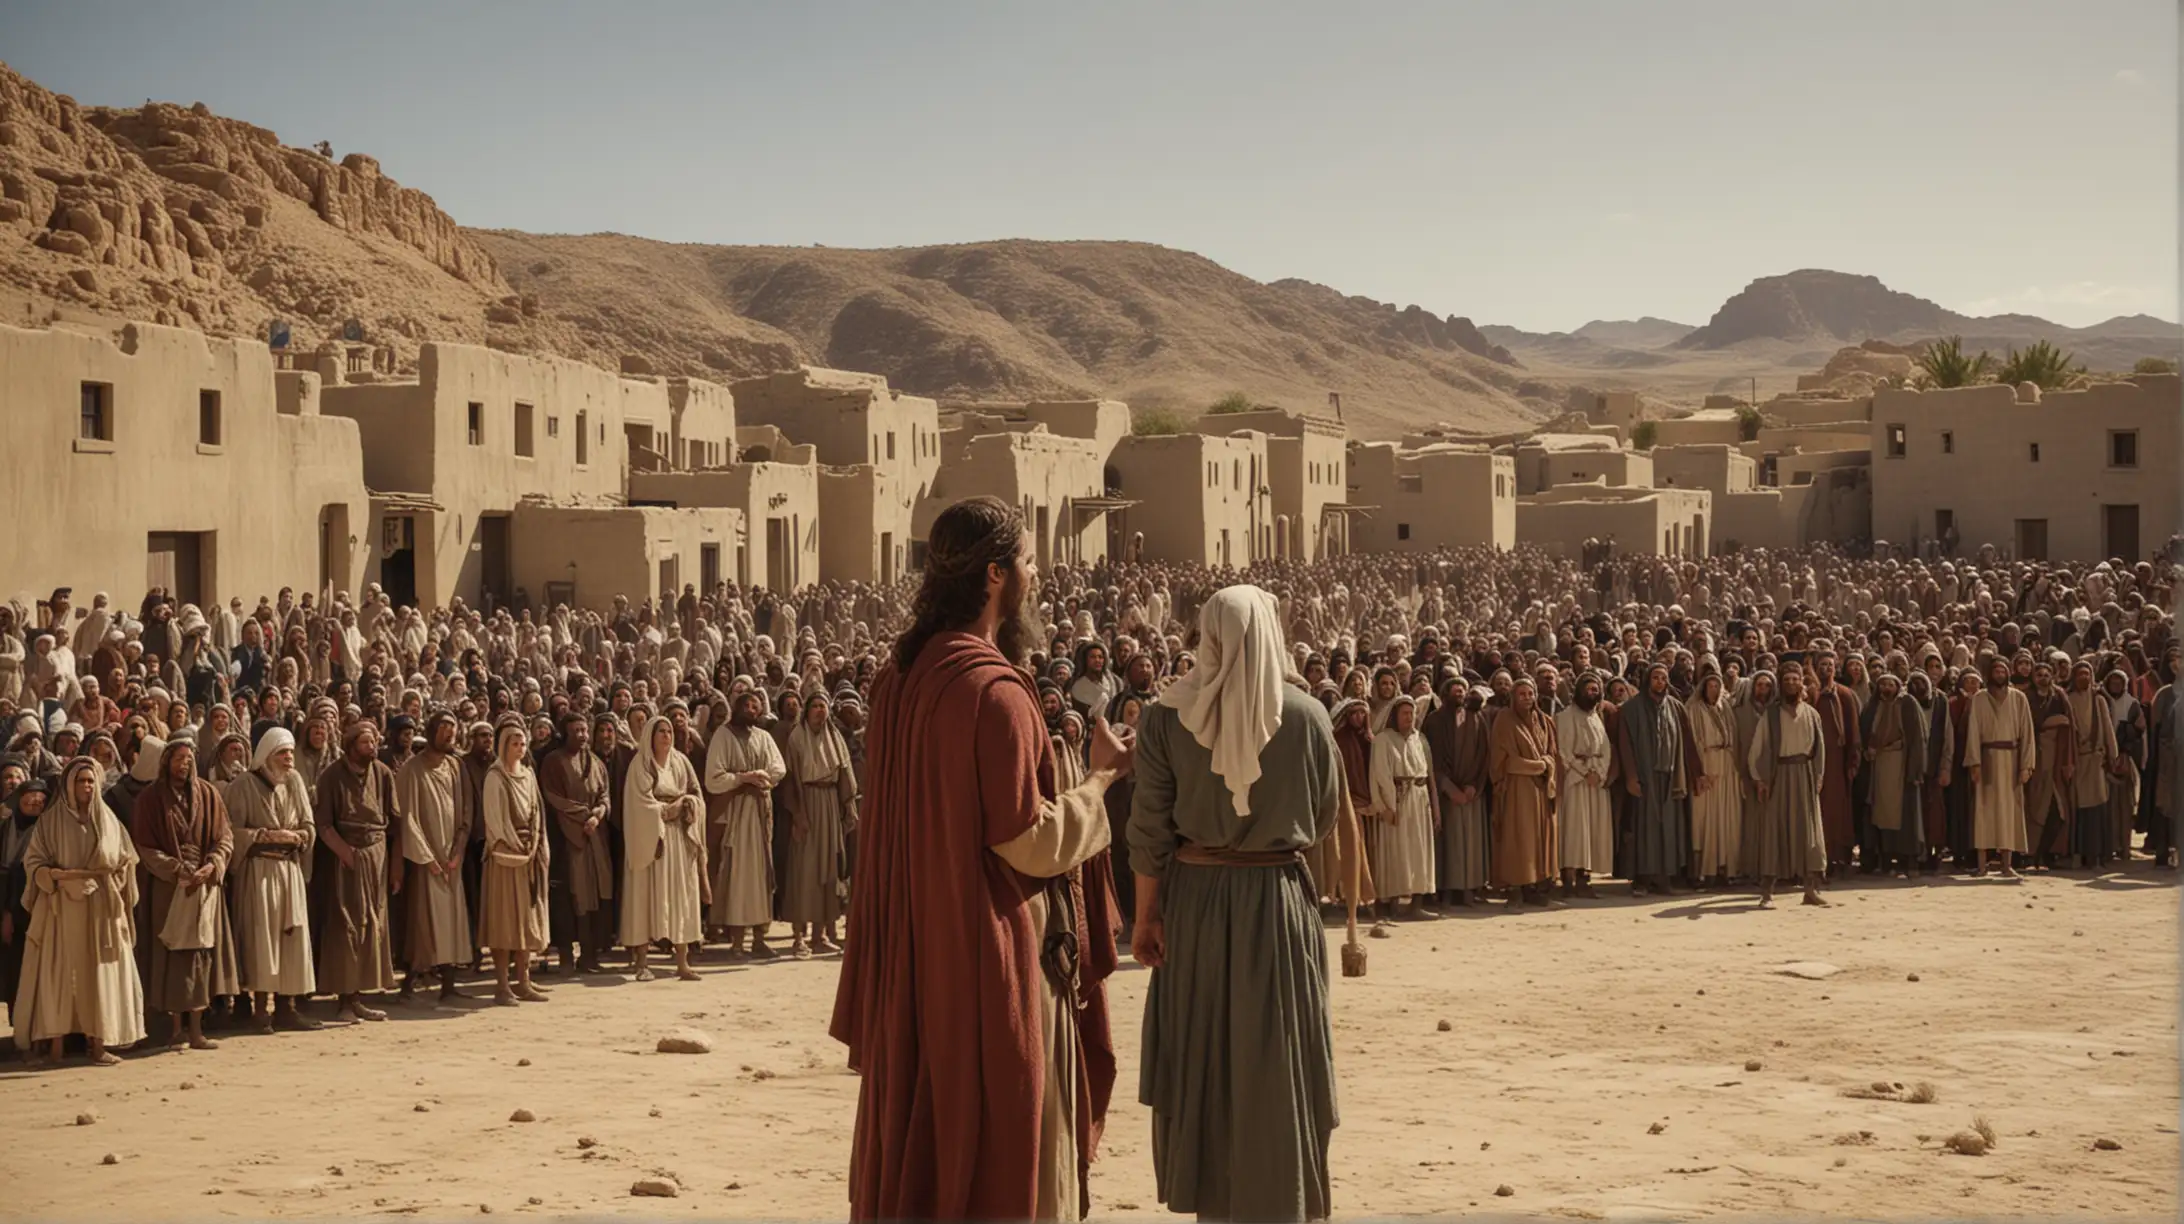 Biblical Era Joshua Preaching to Desert Town Crowd